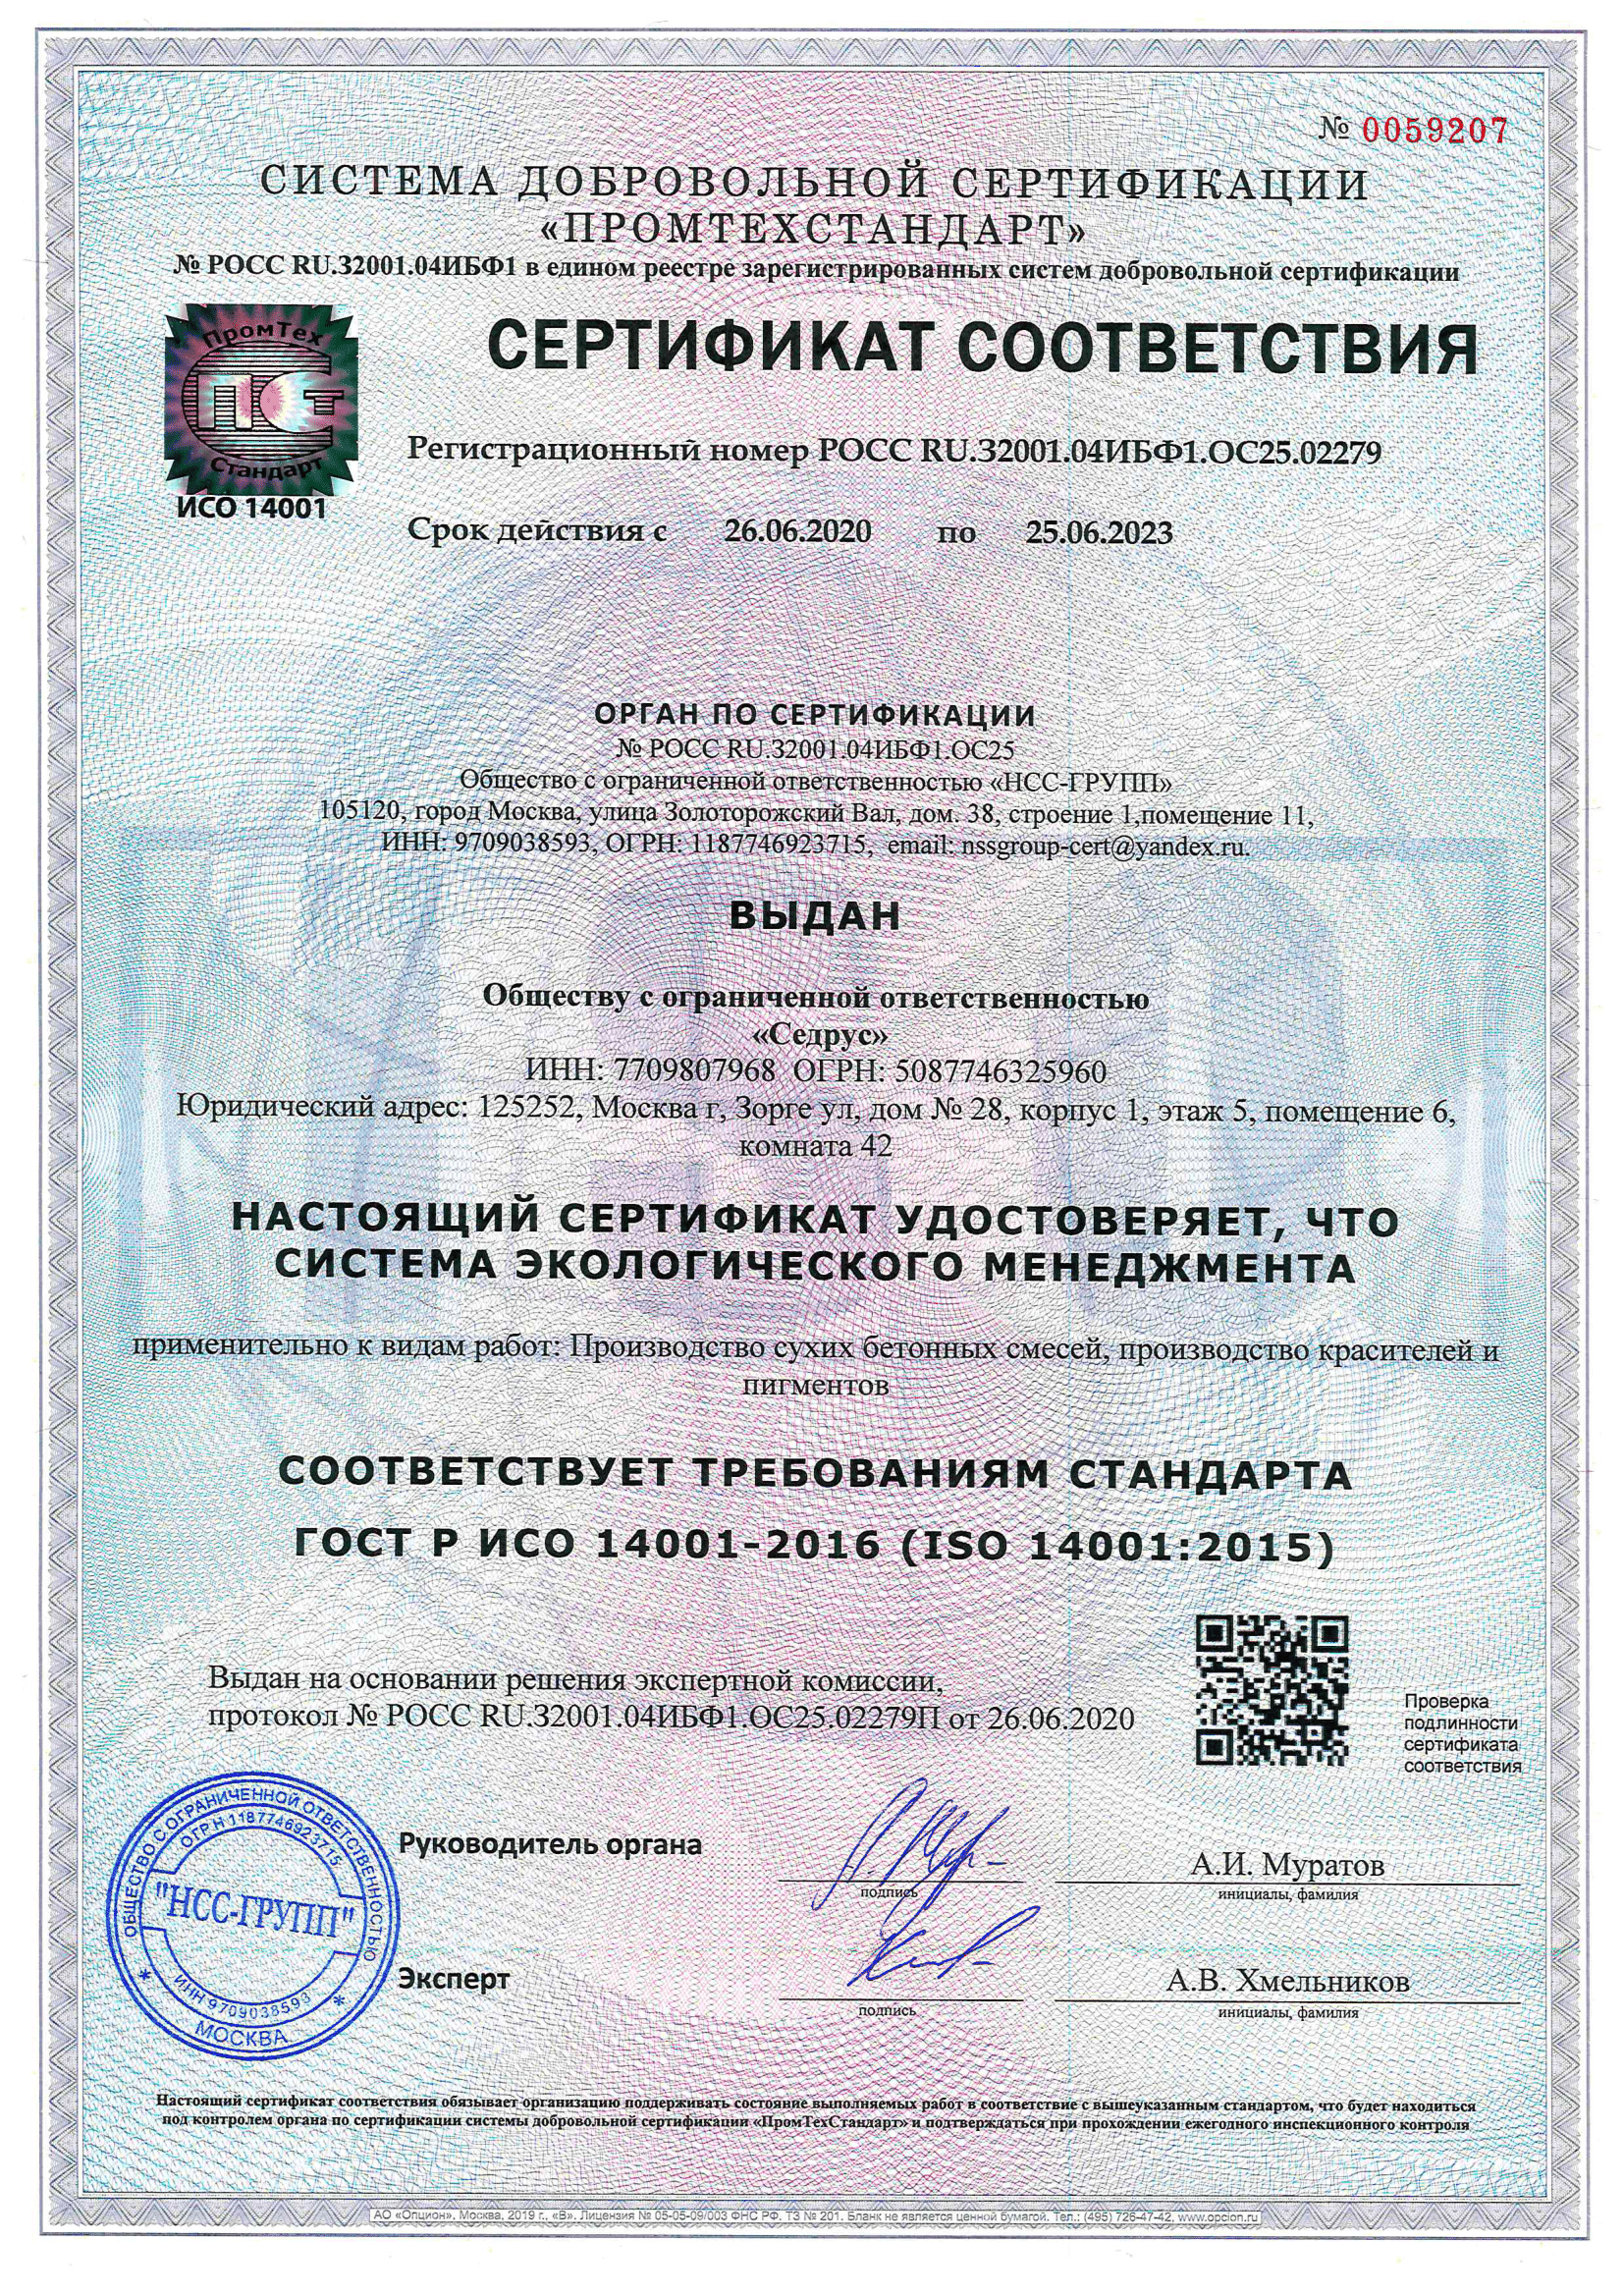 Сертификат соответствия Системы экологического менеджмента (ISO 14001:2015)